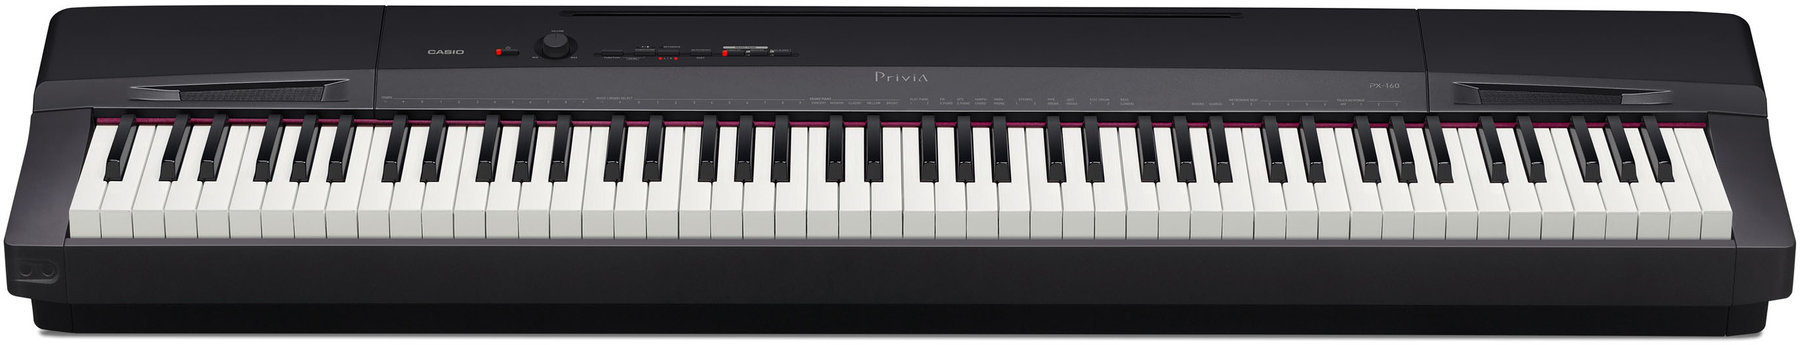 Digital Stage Piano Casio PX-160BK